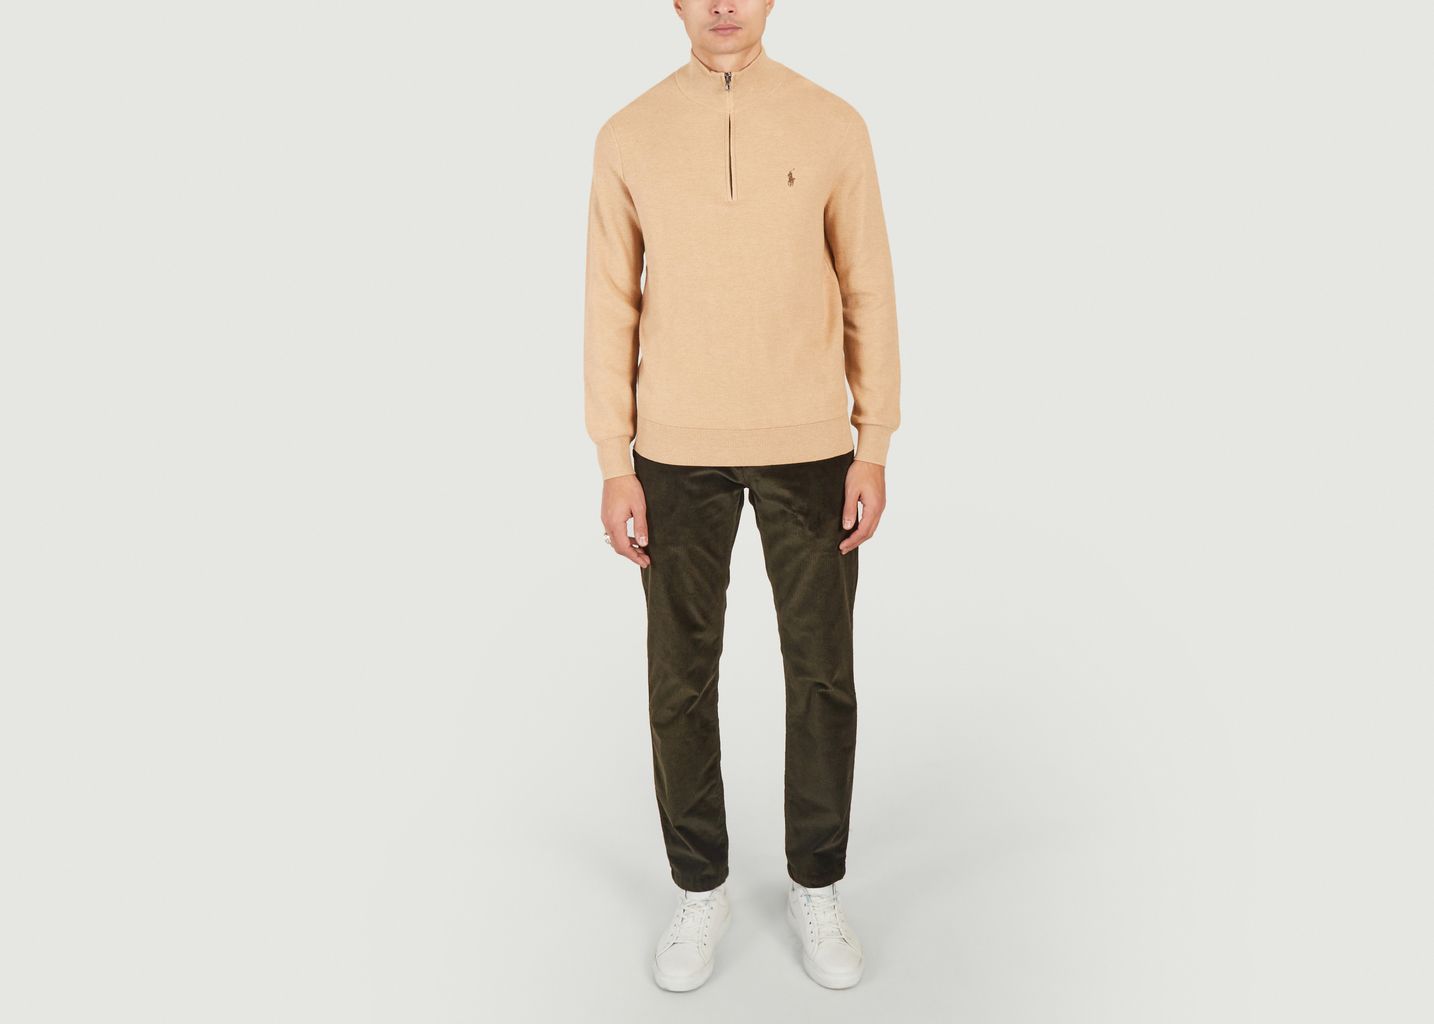 Halb-Zipper-Pullover aus Baumwoll-Piqué  - Polo Ralph Lauren